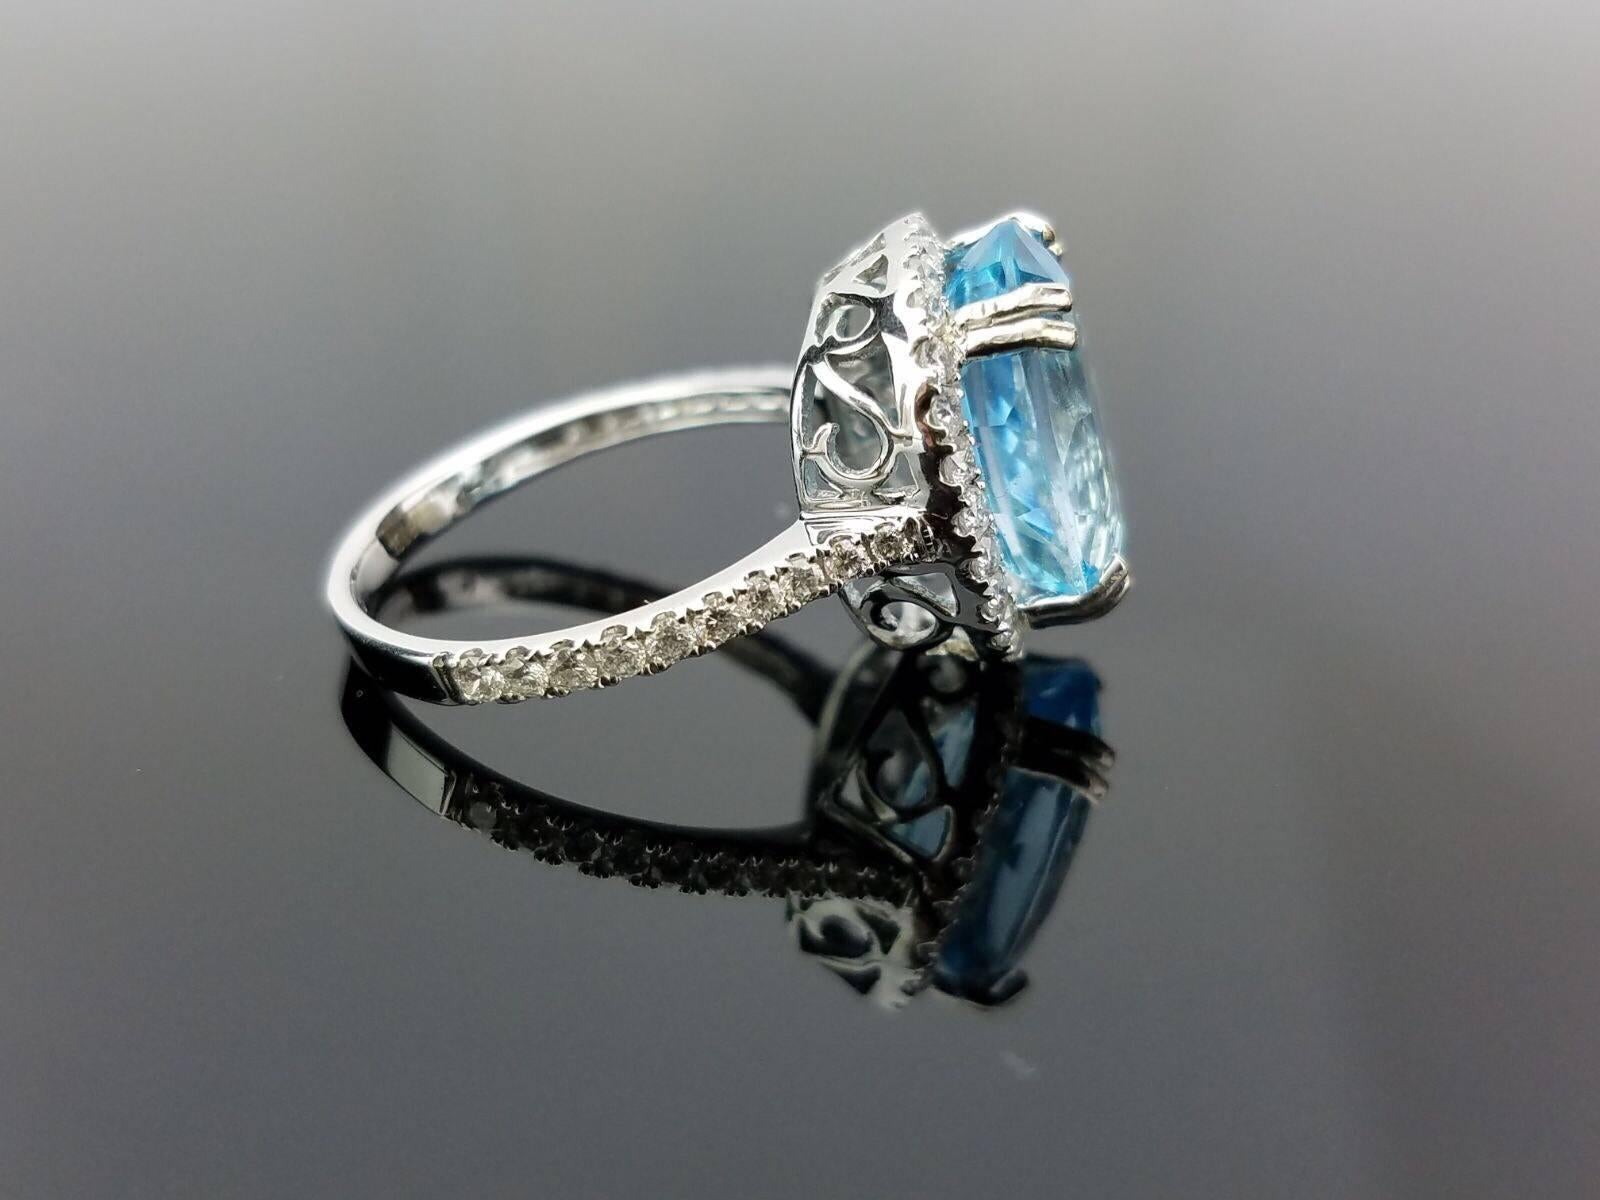 Magnifique Topaze bleue avec un halo de diamants serti sur un anneau d'or blanc 18K

Détails de la pierre centrale :  
Pierre : Topaze bleue
Coupe : Ovale
Poids : 6,28 carats

Détails du diamant :
Taille : Brilliante (ronde) 
Poids total en carats :